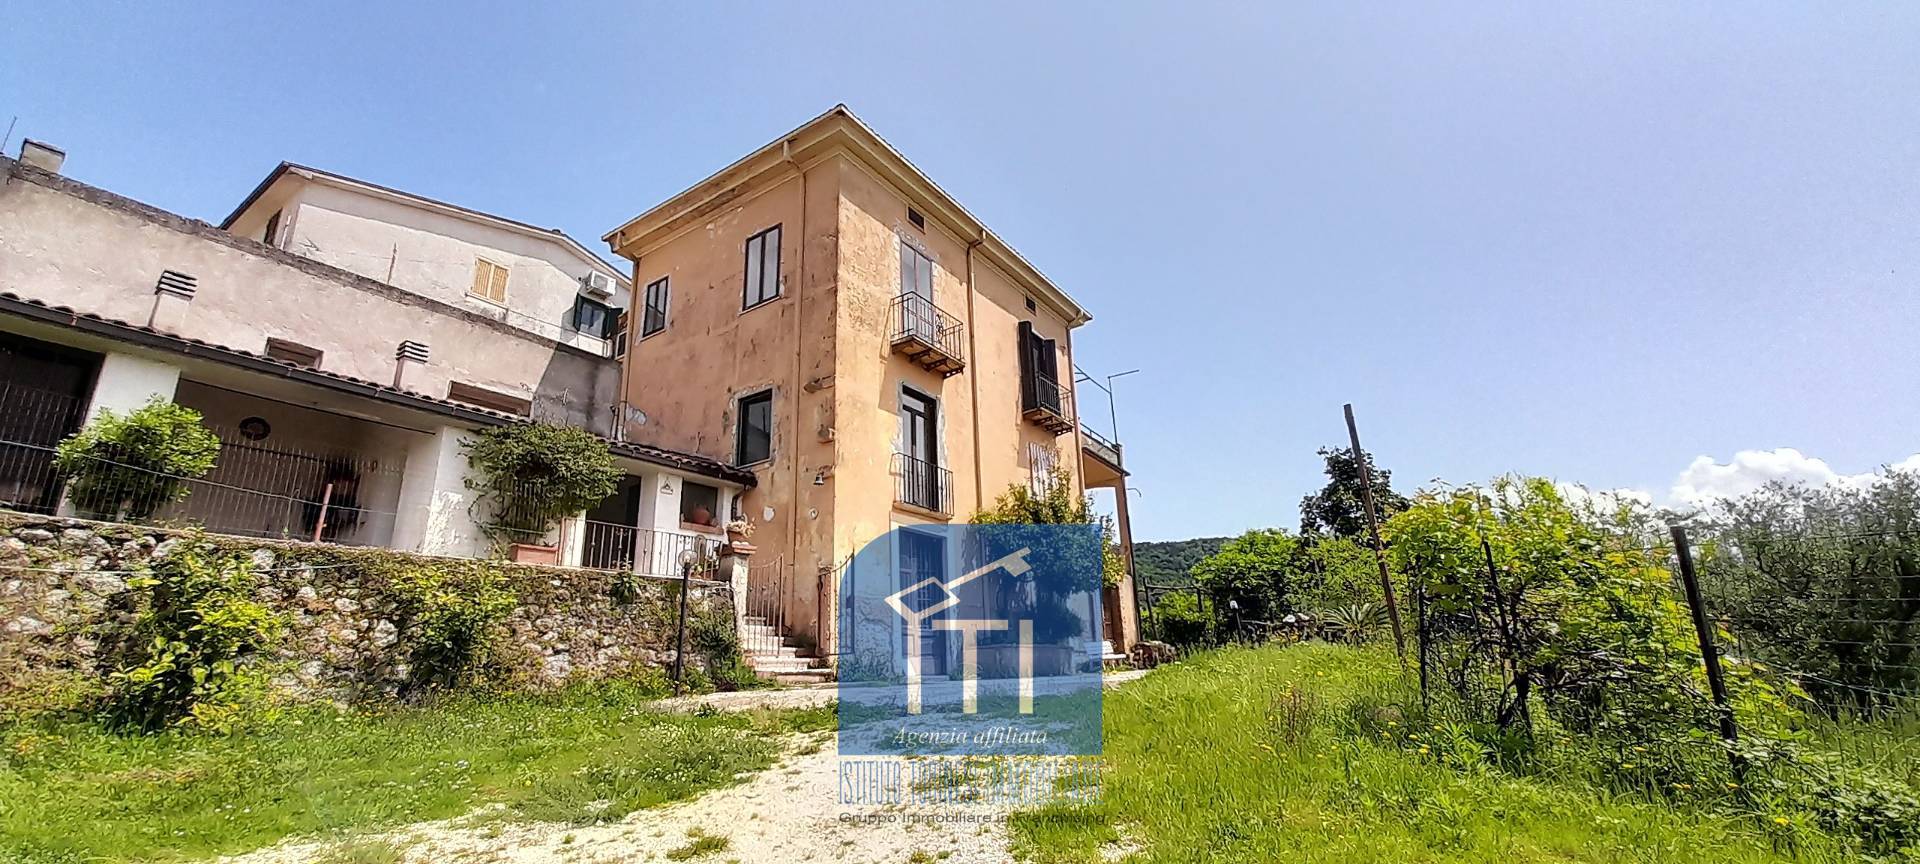 Villa in vendita a Cervaro, 9 locali, prezzo € 159.000 | PortaleAgenzieImmobiliari.it